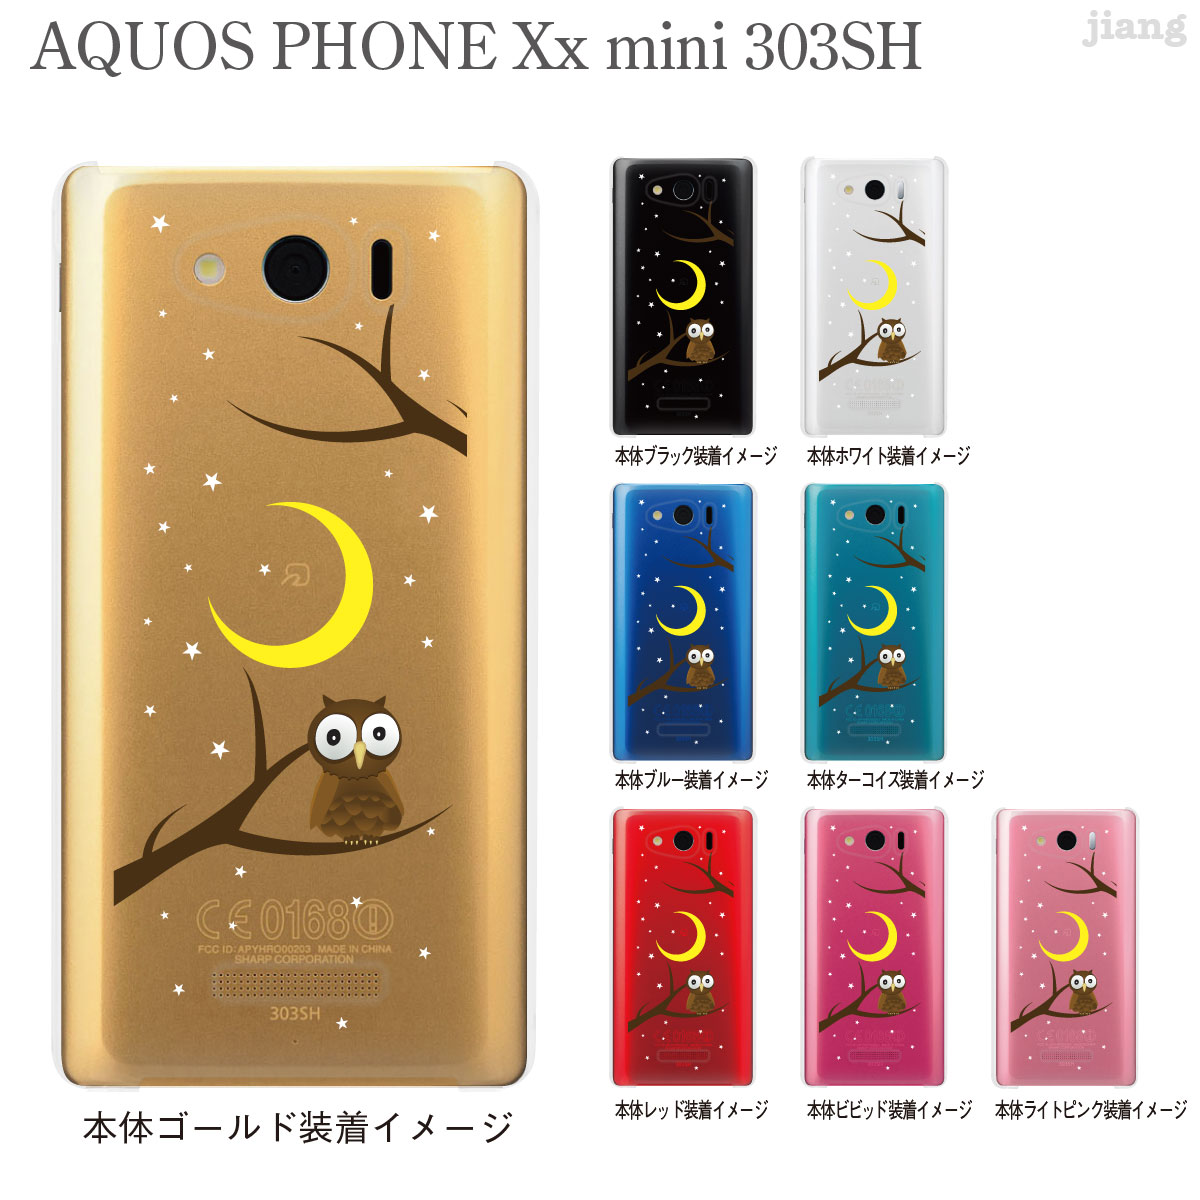 AQUOS PHONE Xx mini 303SH Soft Bank P[X Jo[ X}zP[X NAP[X Clear Arts tNE 09-303sh-th0002